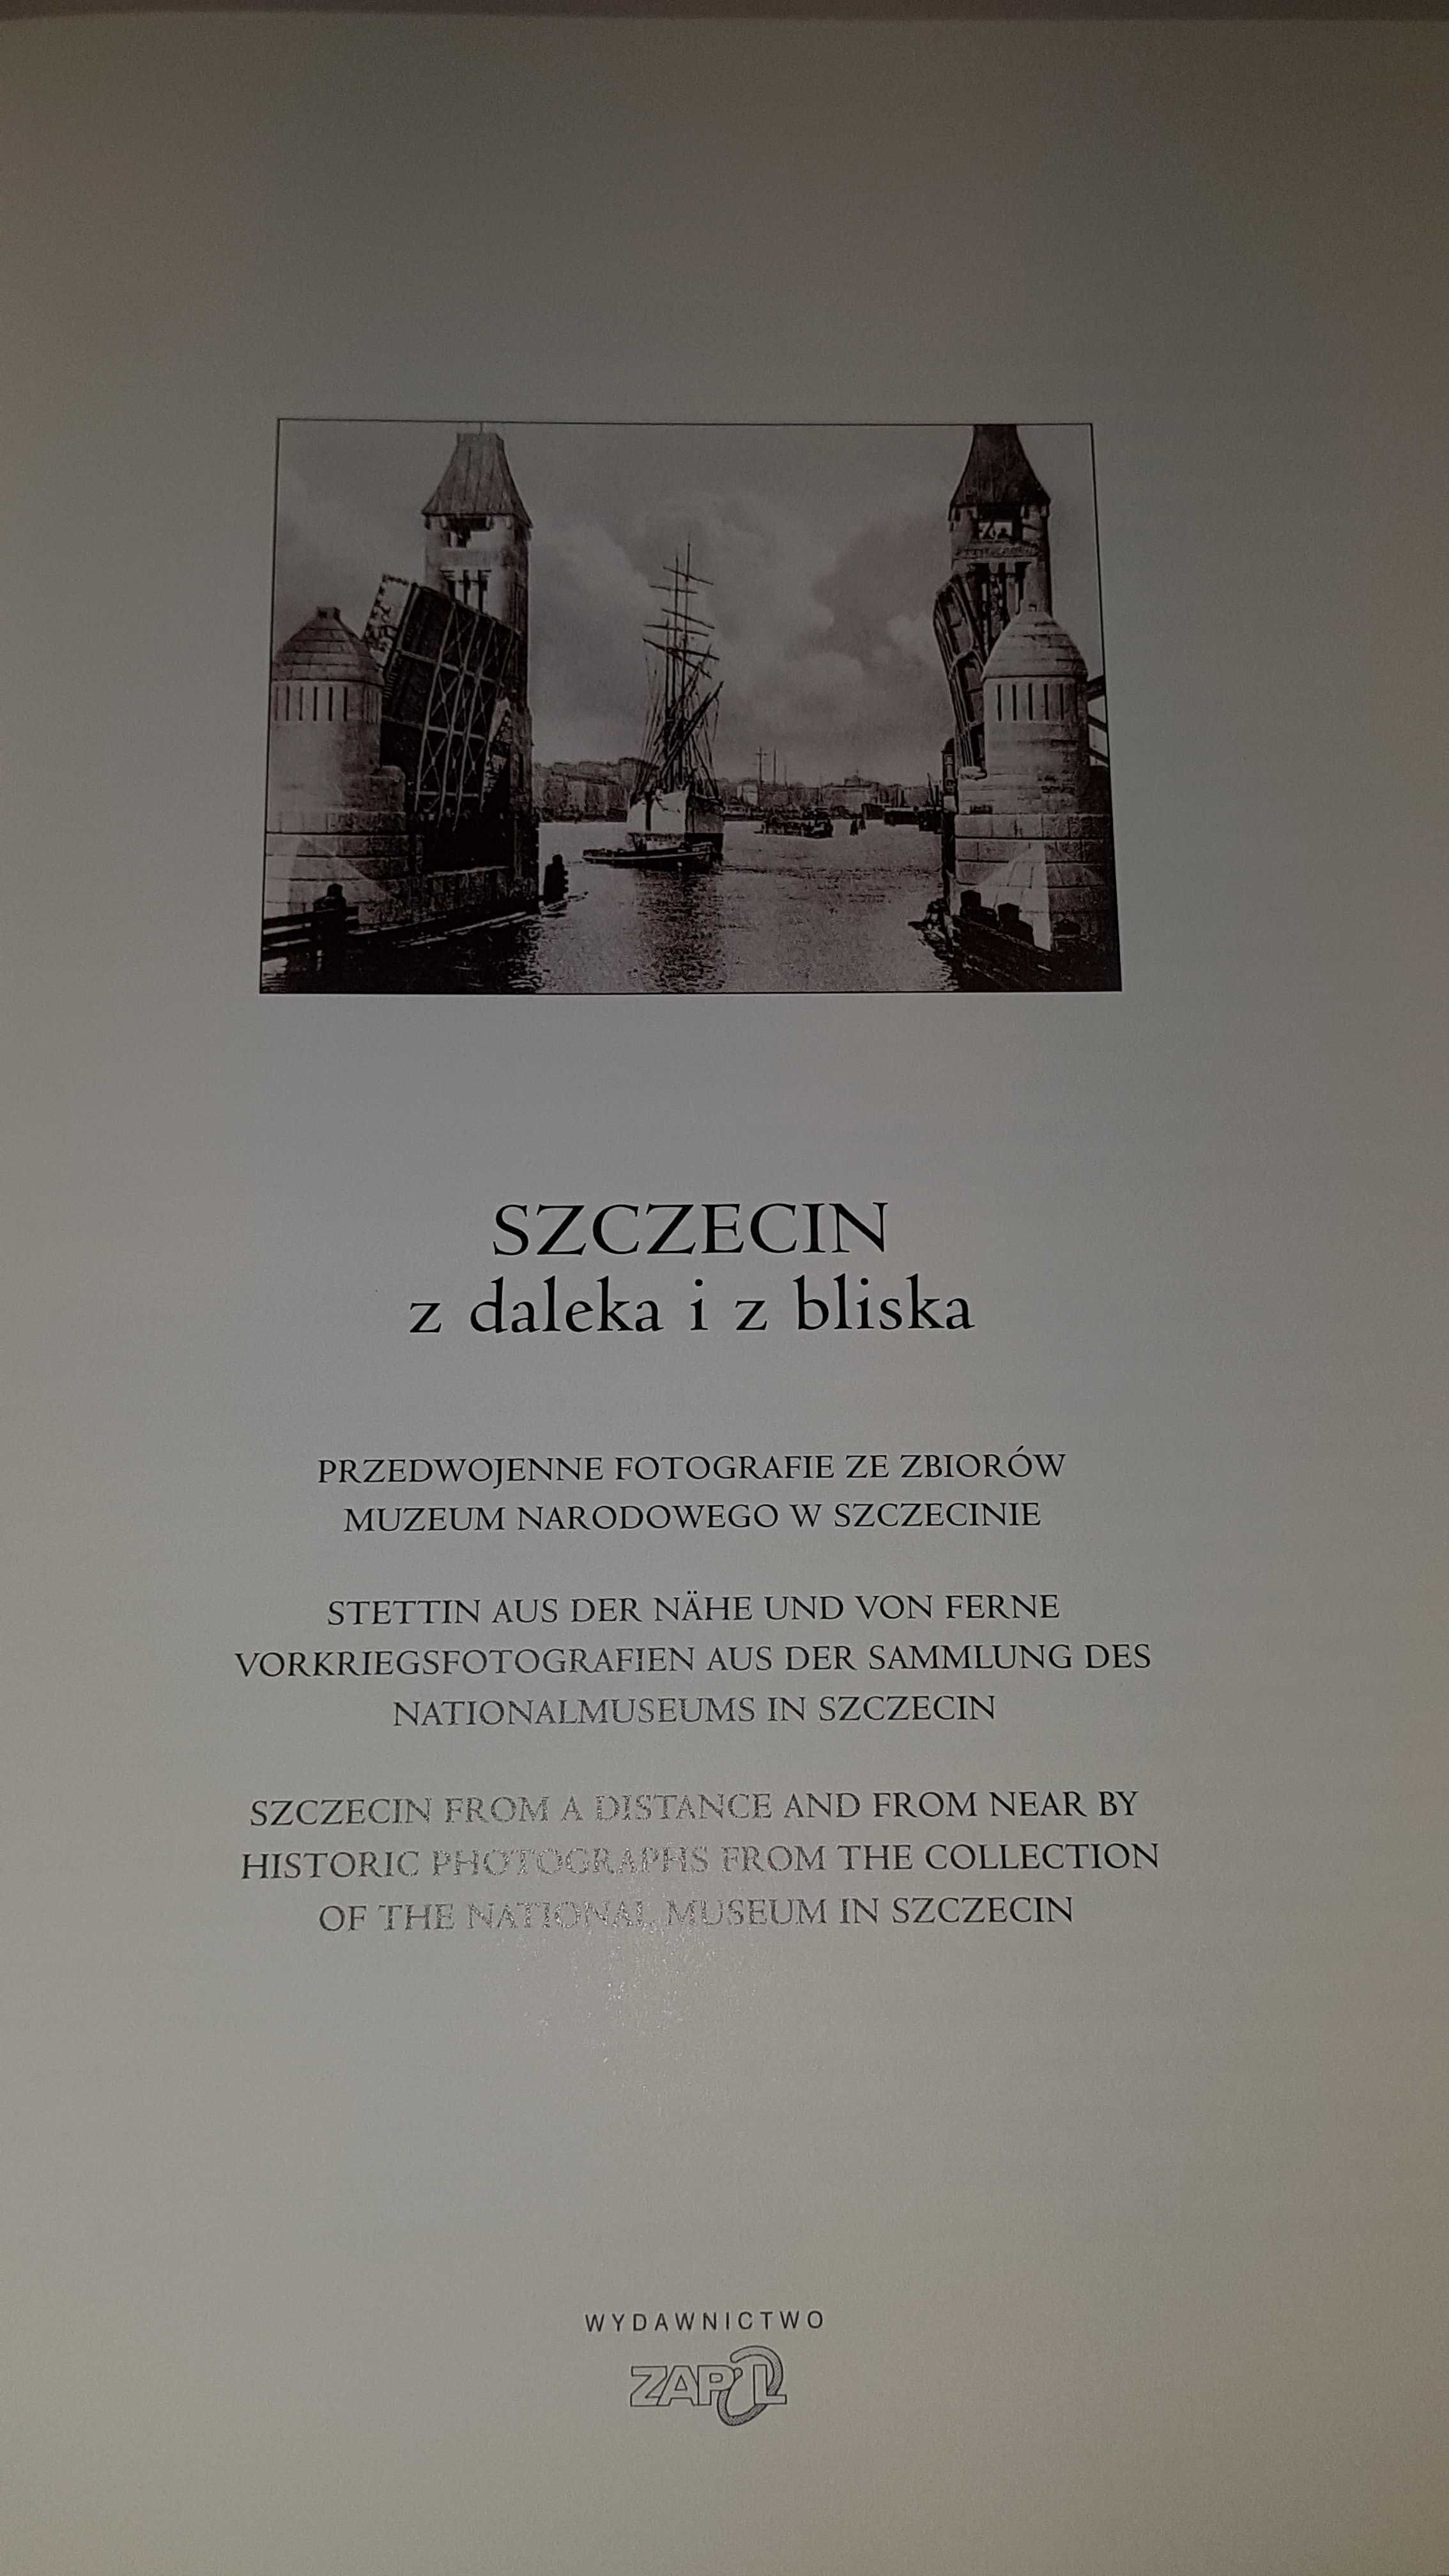 Piękny album - Szczecin z daleka i z bliska, przedwojenny Szczecin